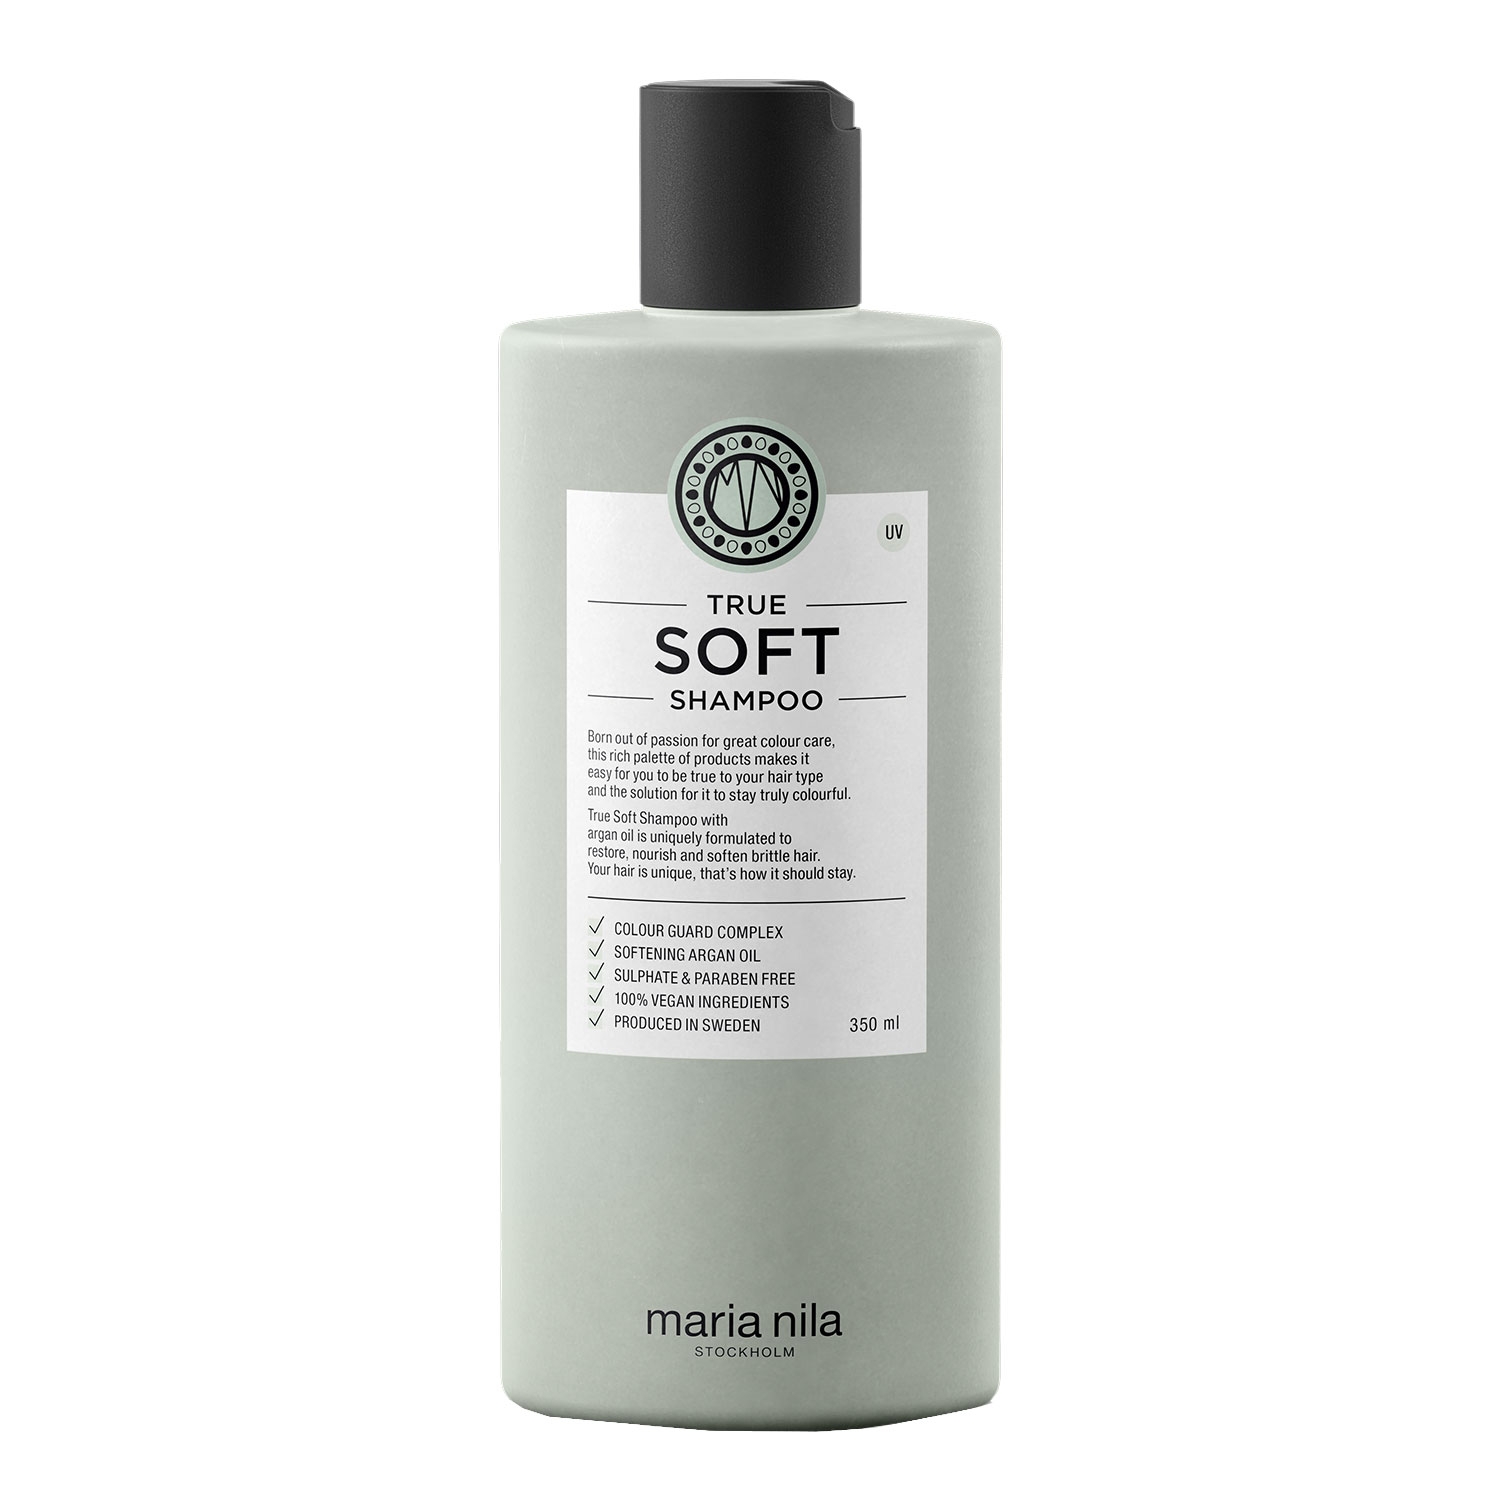 Produktbild von Care & Style - True Soft Shampoo